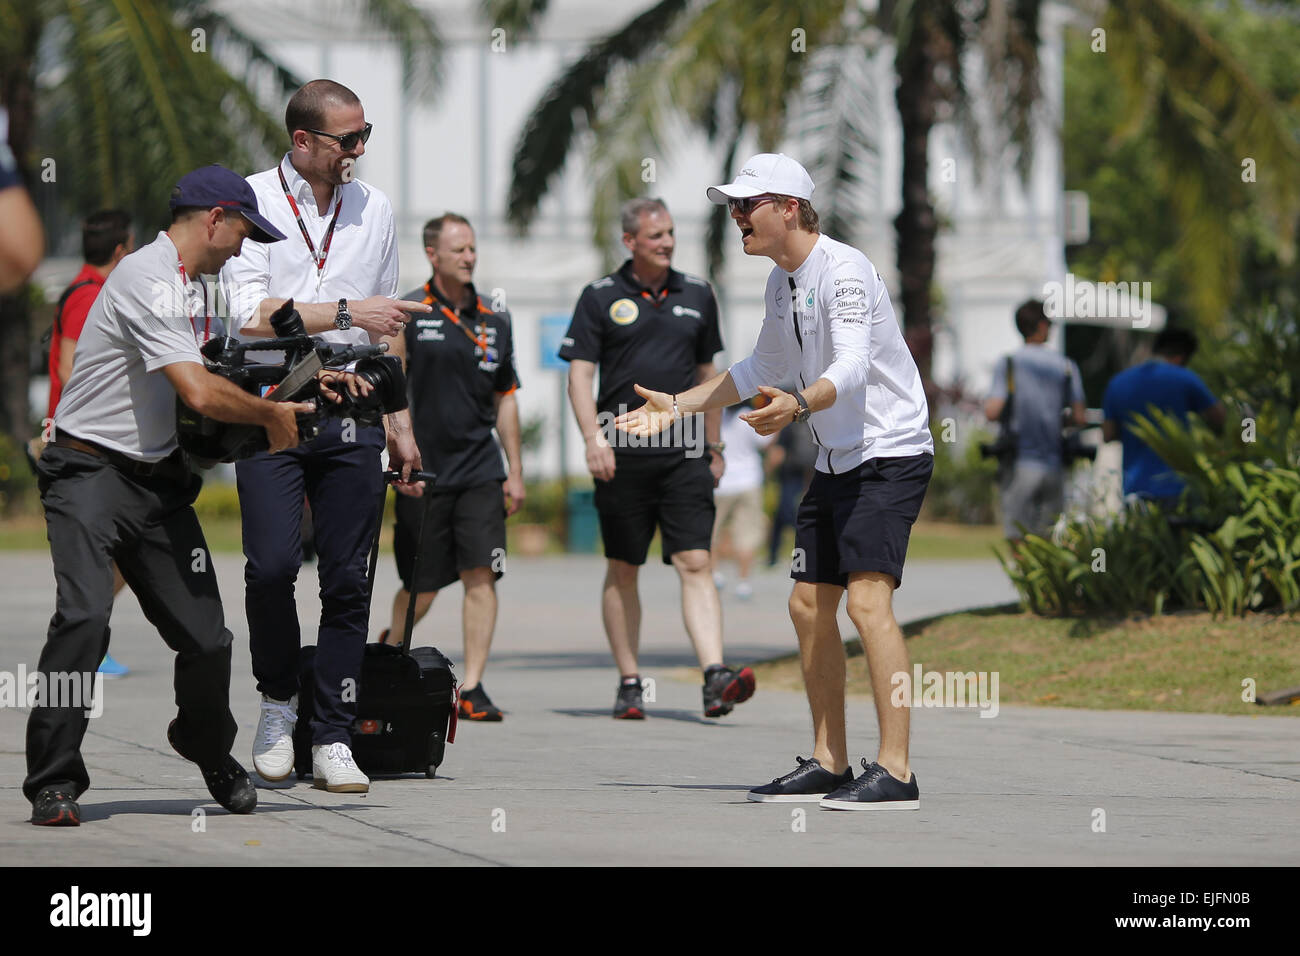 Sepang, en Malaisie. Mar 26, 2015. L'Allemagne de Nico Rosberg et Mercedes AMG Petronas F1 Team est vu dans le paddock durant les préparatifs de l'année 2015, Grand Prix de Malaisie de Formule 1 à Sepang International Circuit à Sepang, Malaisie. Credit : James/Gasperotti ZUMA Wire/Alamy Live News Banque D'Images